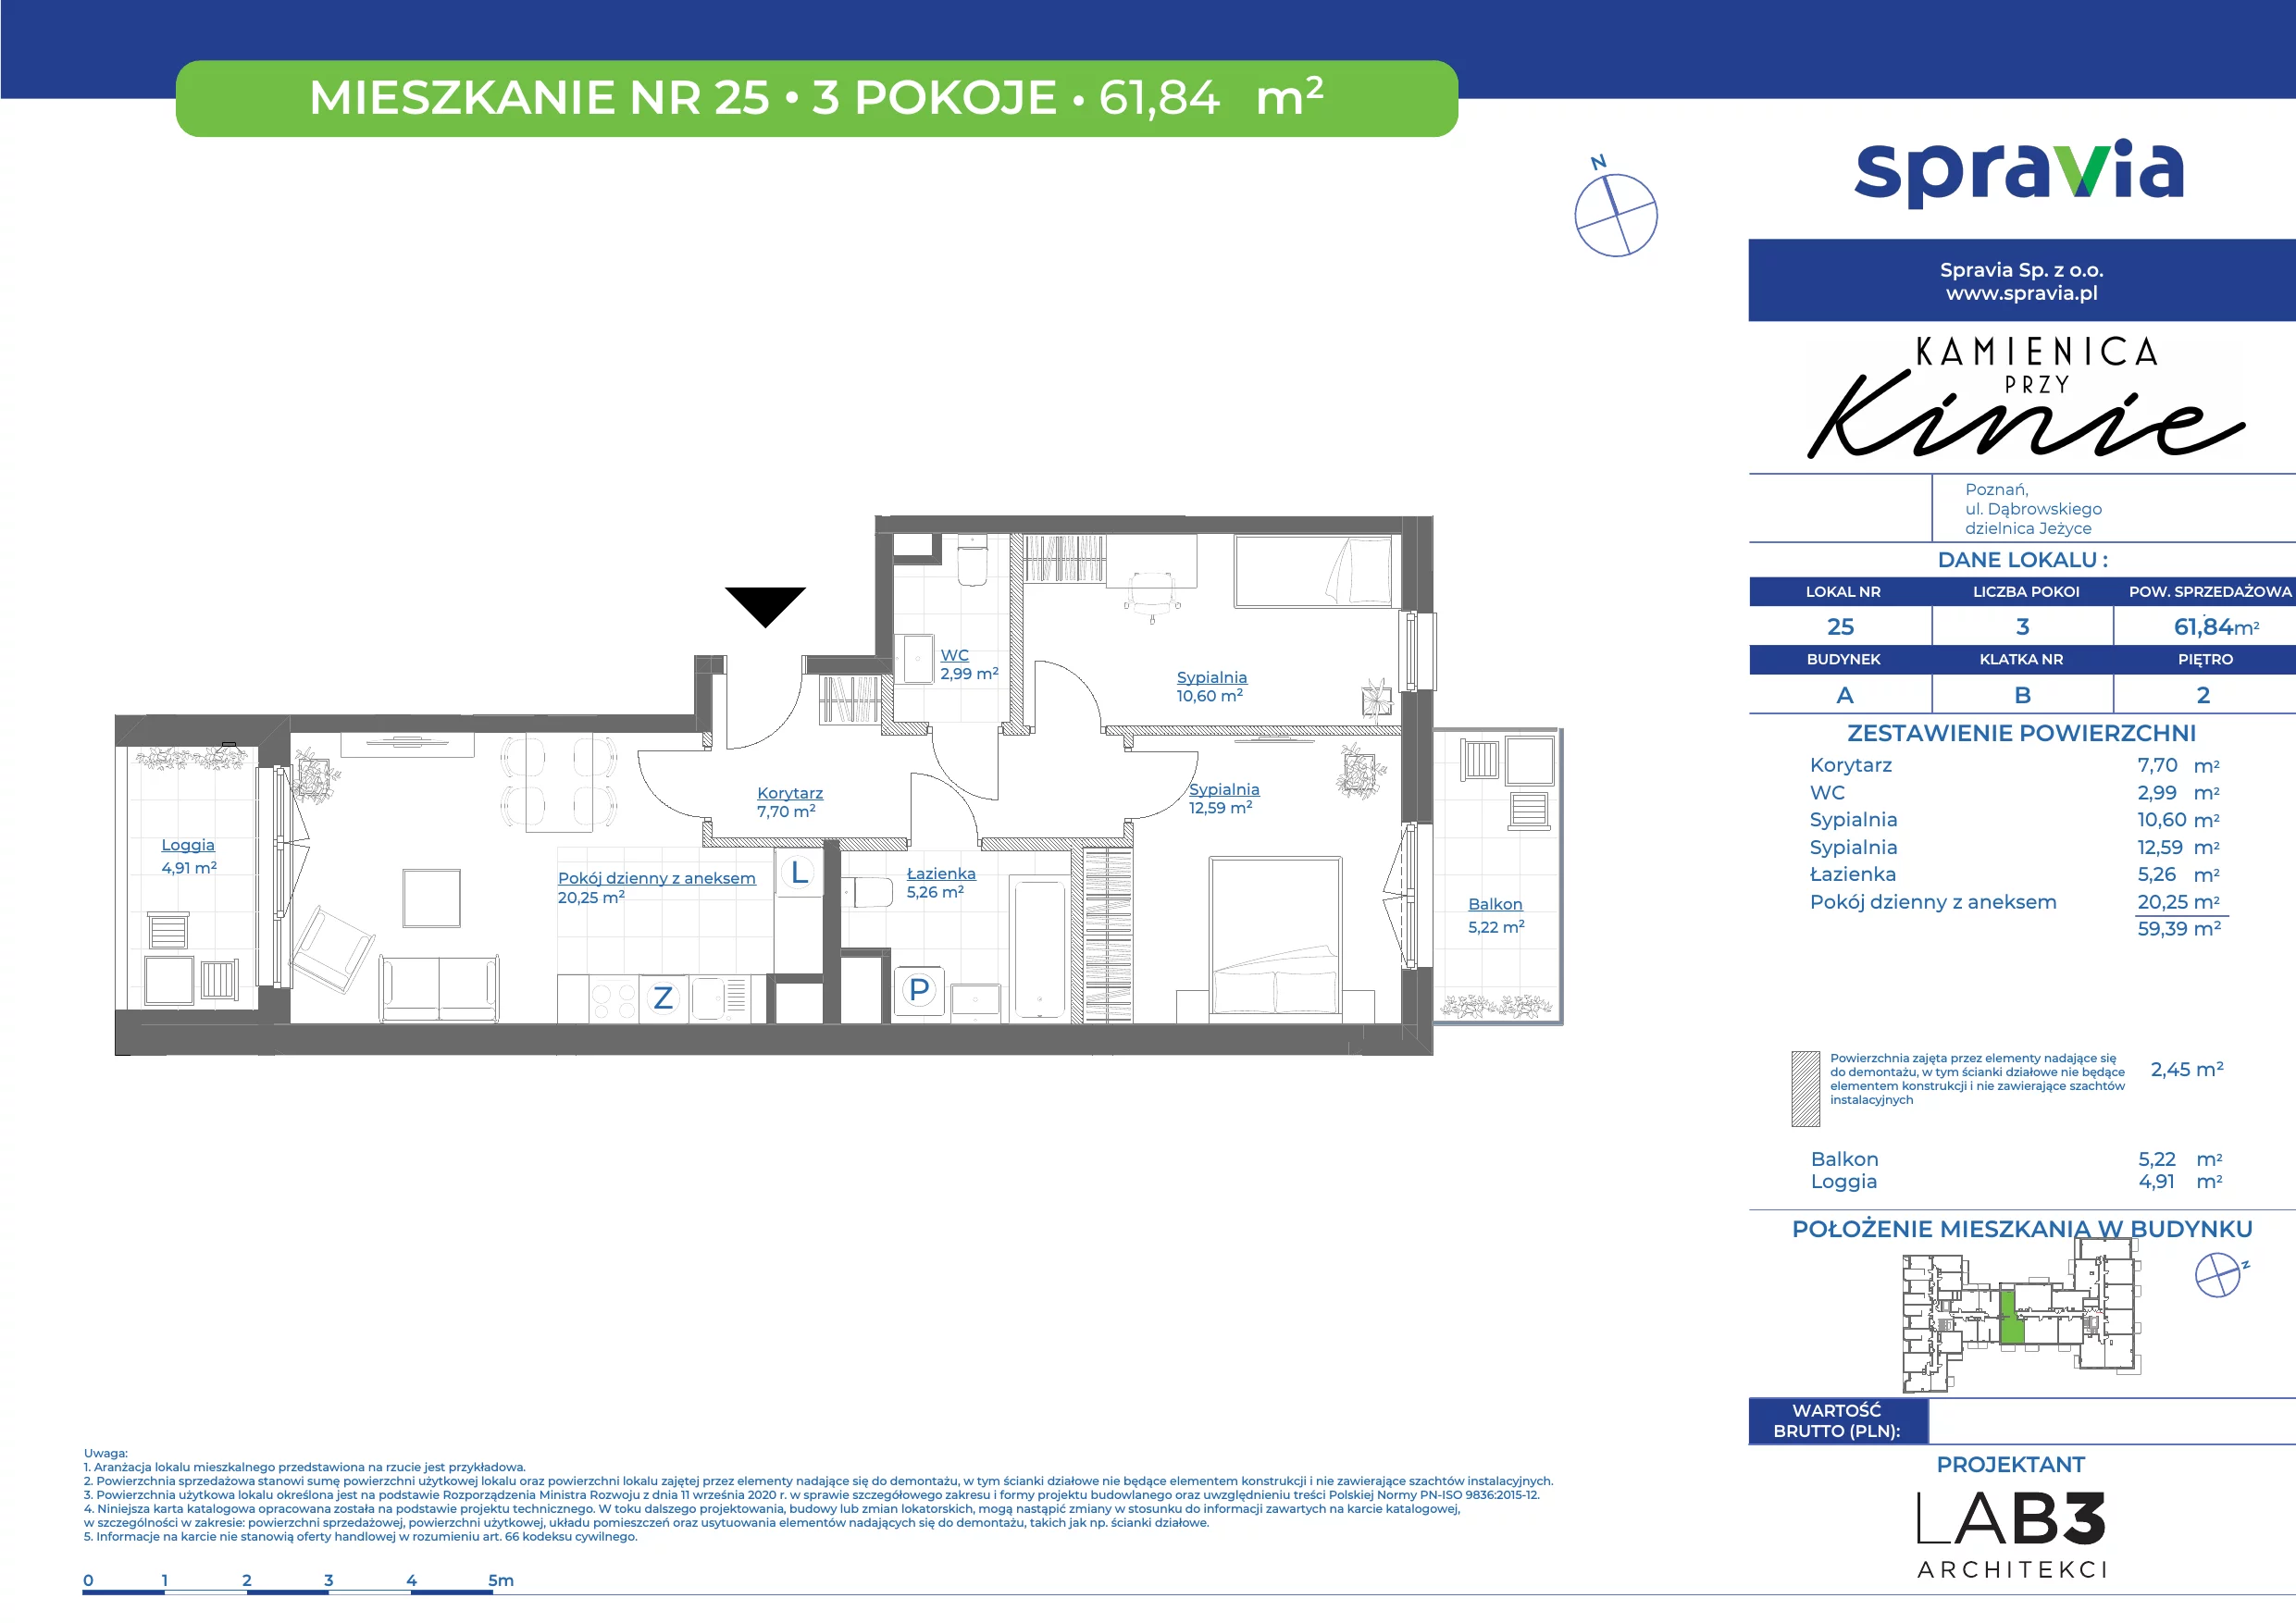 Mieszkanie 61,84 m², piętro 2, oferta nr 25, Kamienica Przy Kinie, Poznań, Jeżyce, Jeżyce, ul. Henryka Dąbrowskiego 31